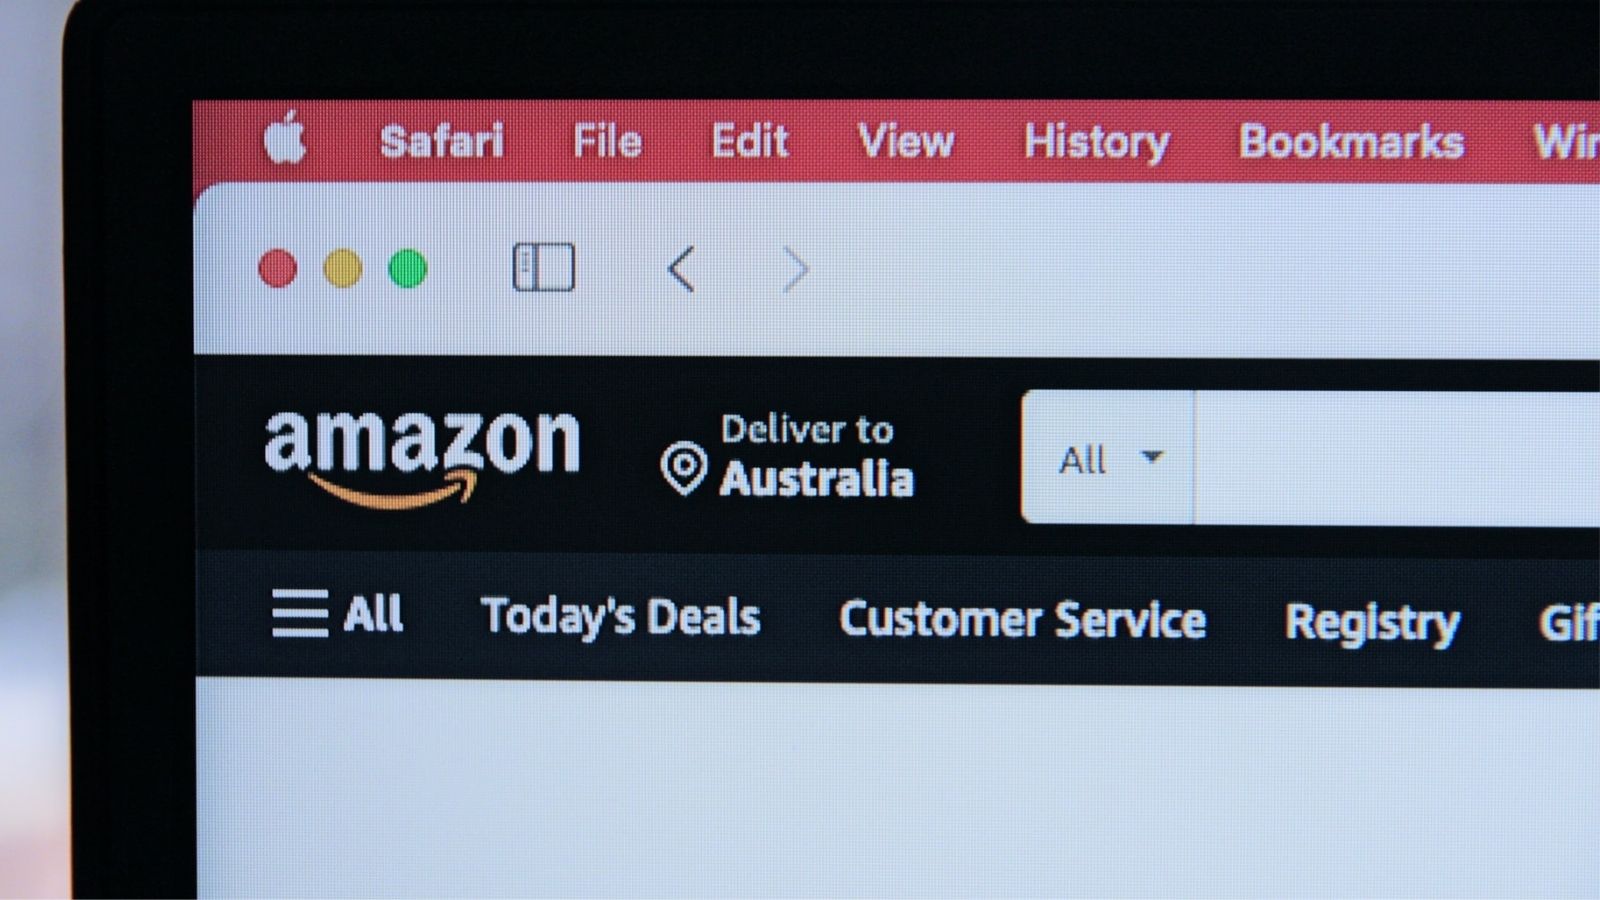 Amazon Складская политика поставила работников под угрозу: отчет